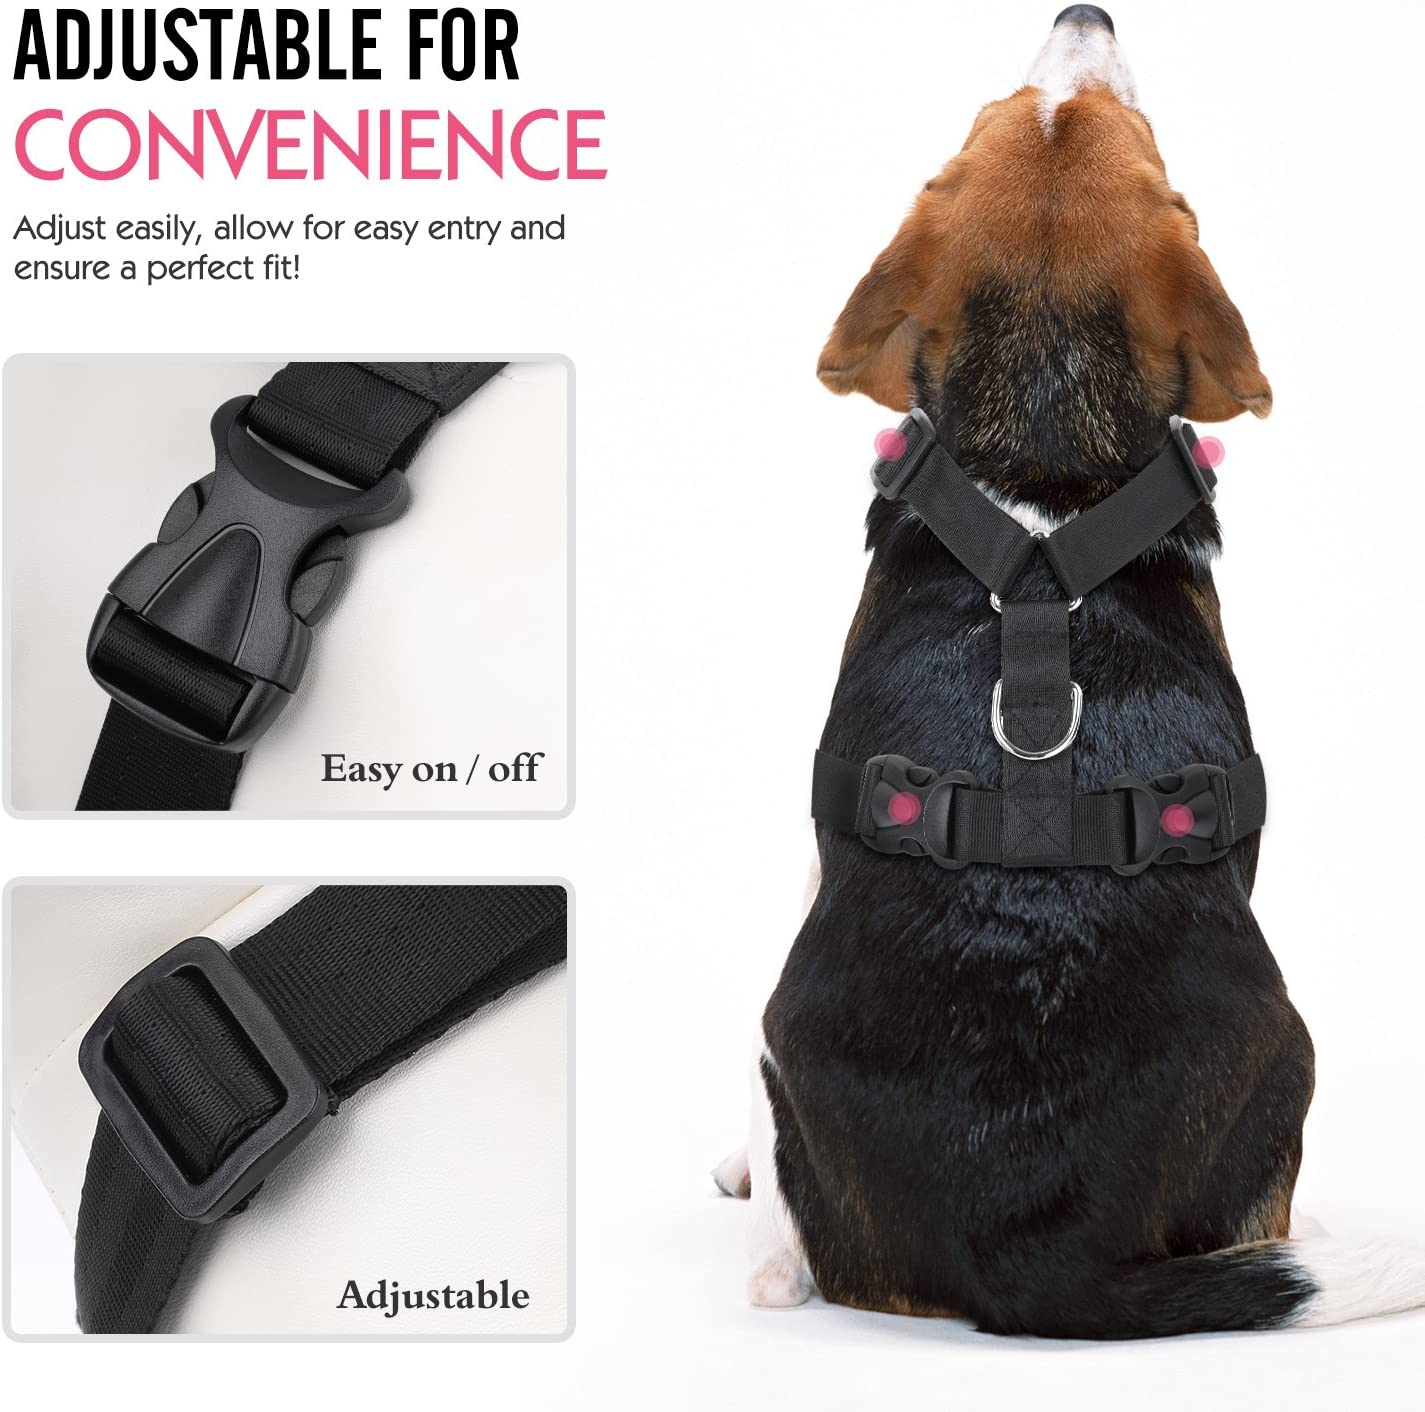  Pawaboo Cinturón De Seguridad de Perro - Adjustable Vest/Harness Car Safety Adecuado para Perros de 55 LBS - 88 LBS, Talla XL, Rojo & Blanco 